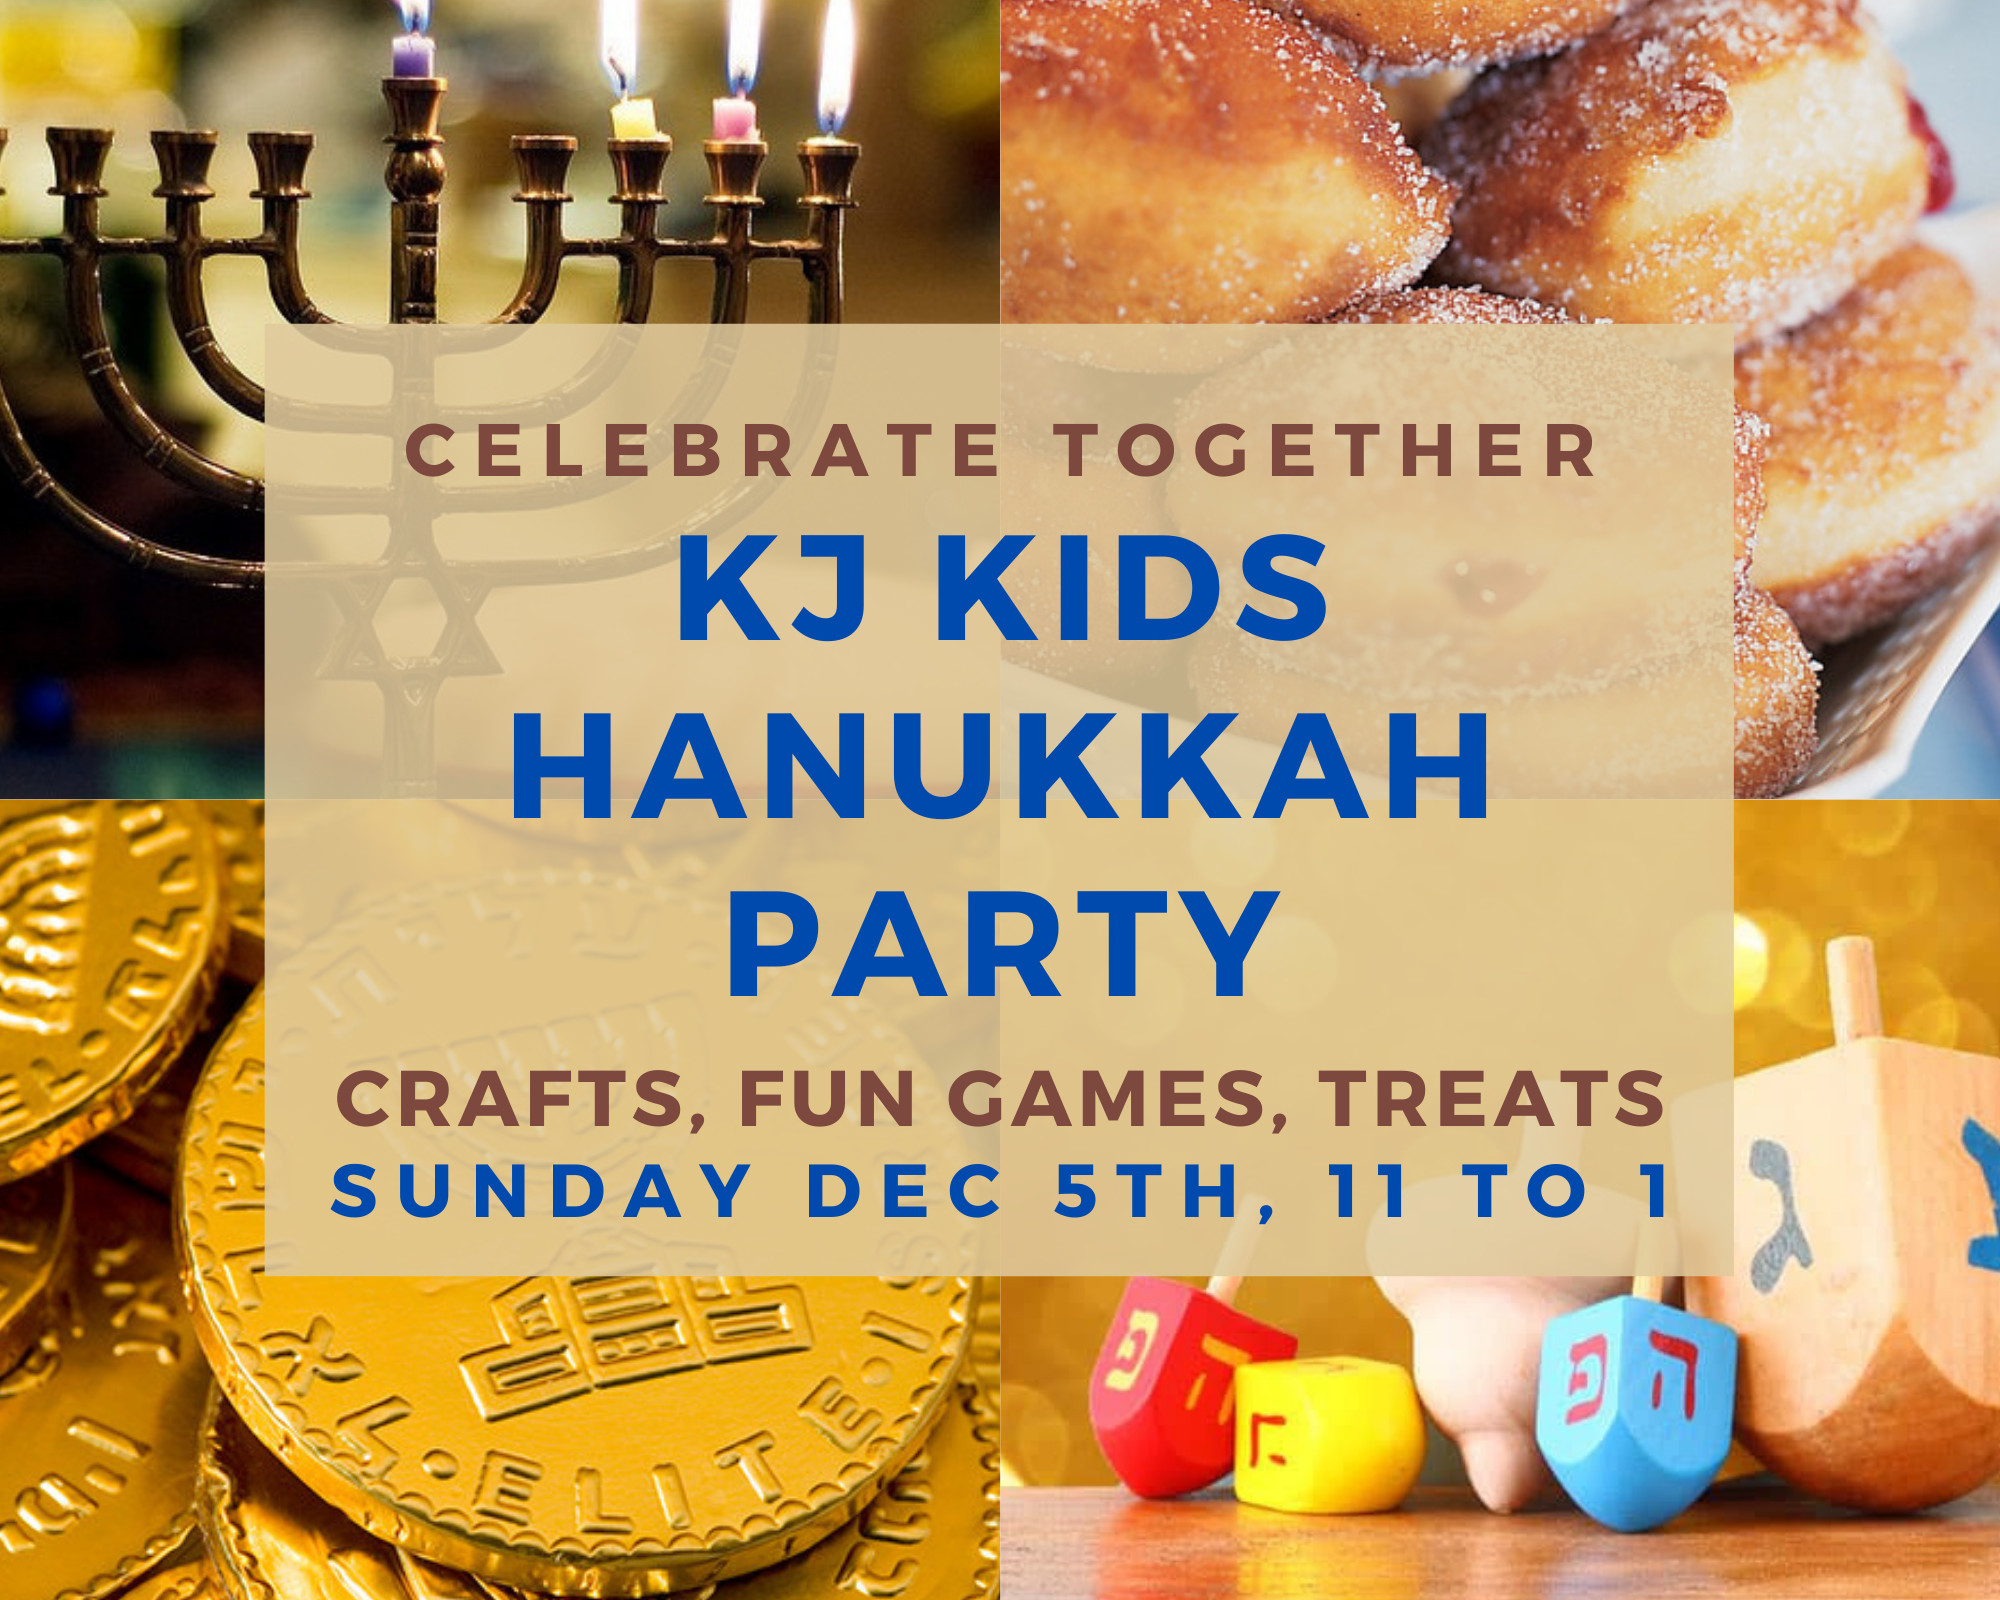 KJ Kids Hanukkah Party